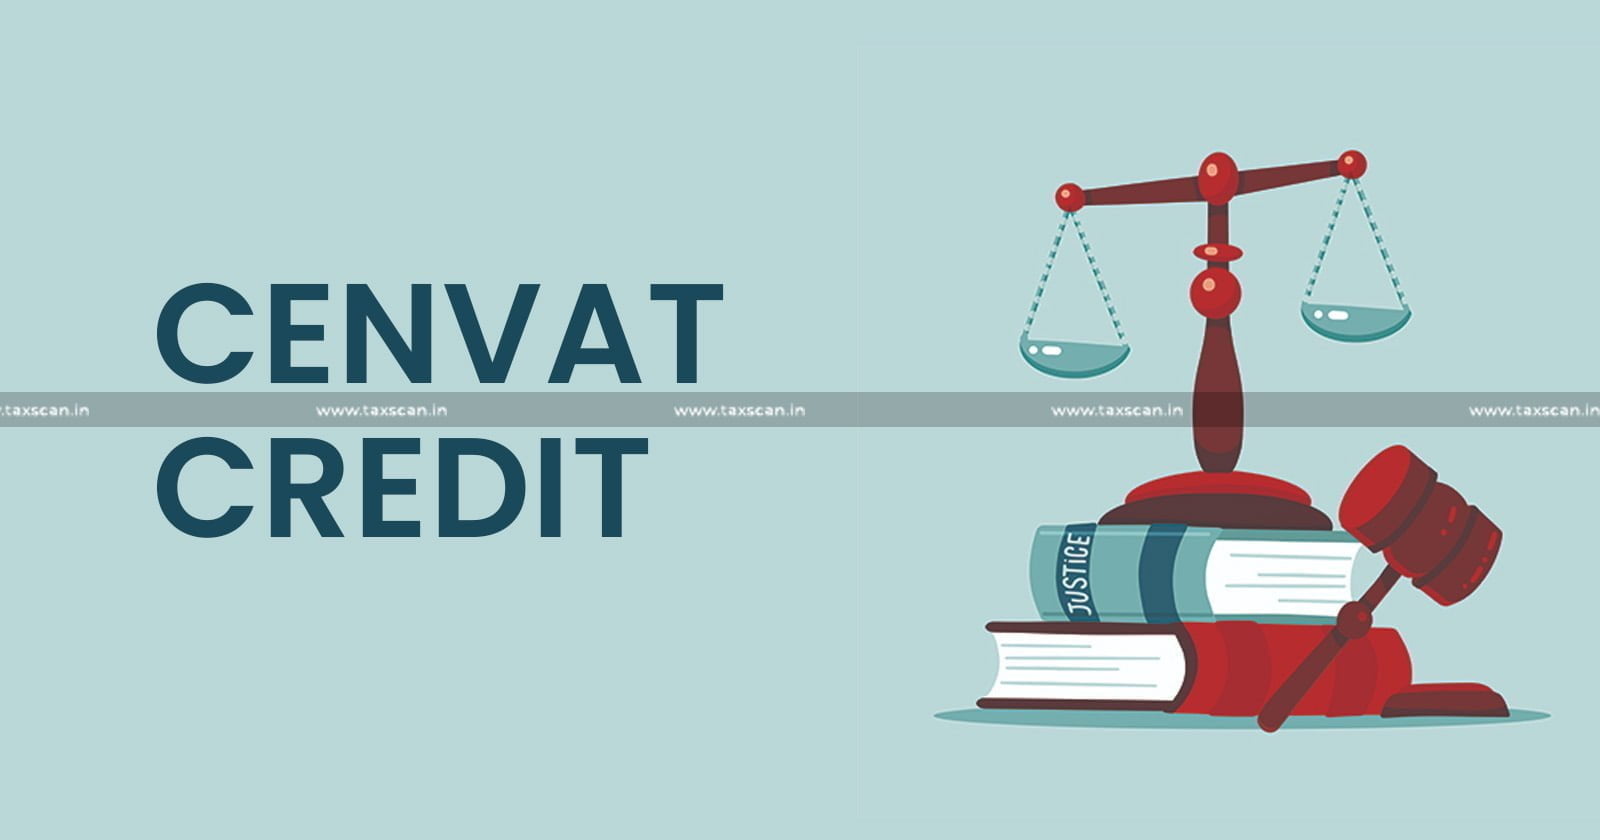 CESTAT - CESTAT Bangalore - Cenvat Credit - Excise Act - Excise duty - taxscan